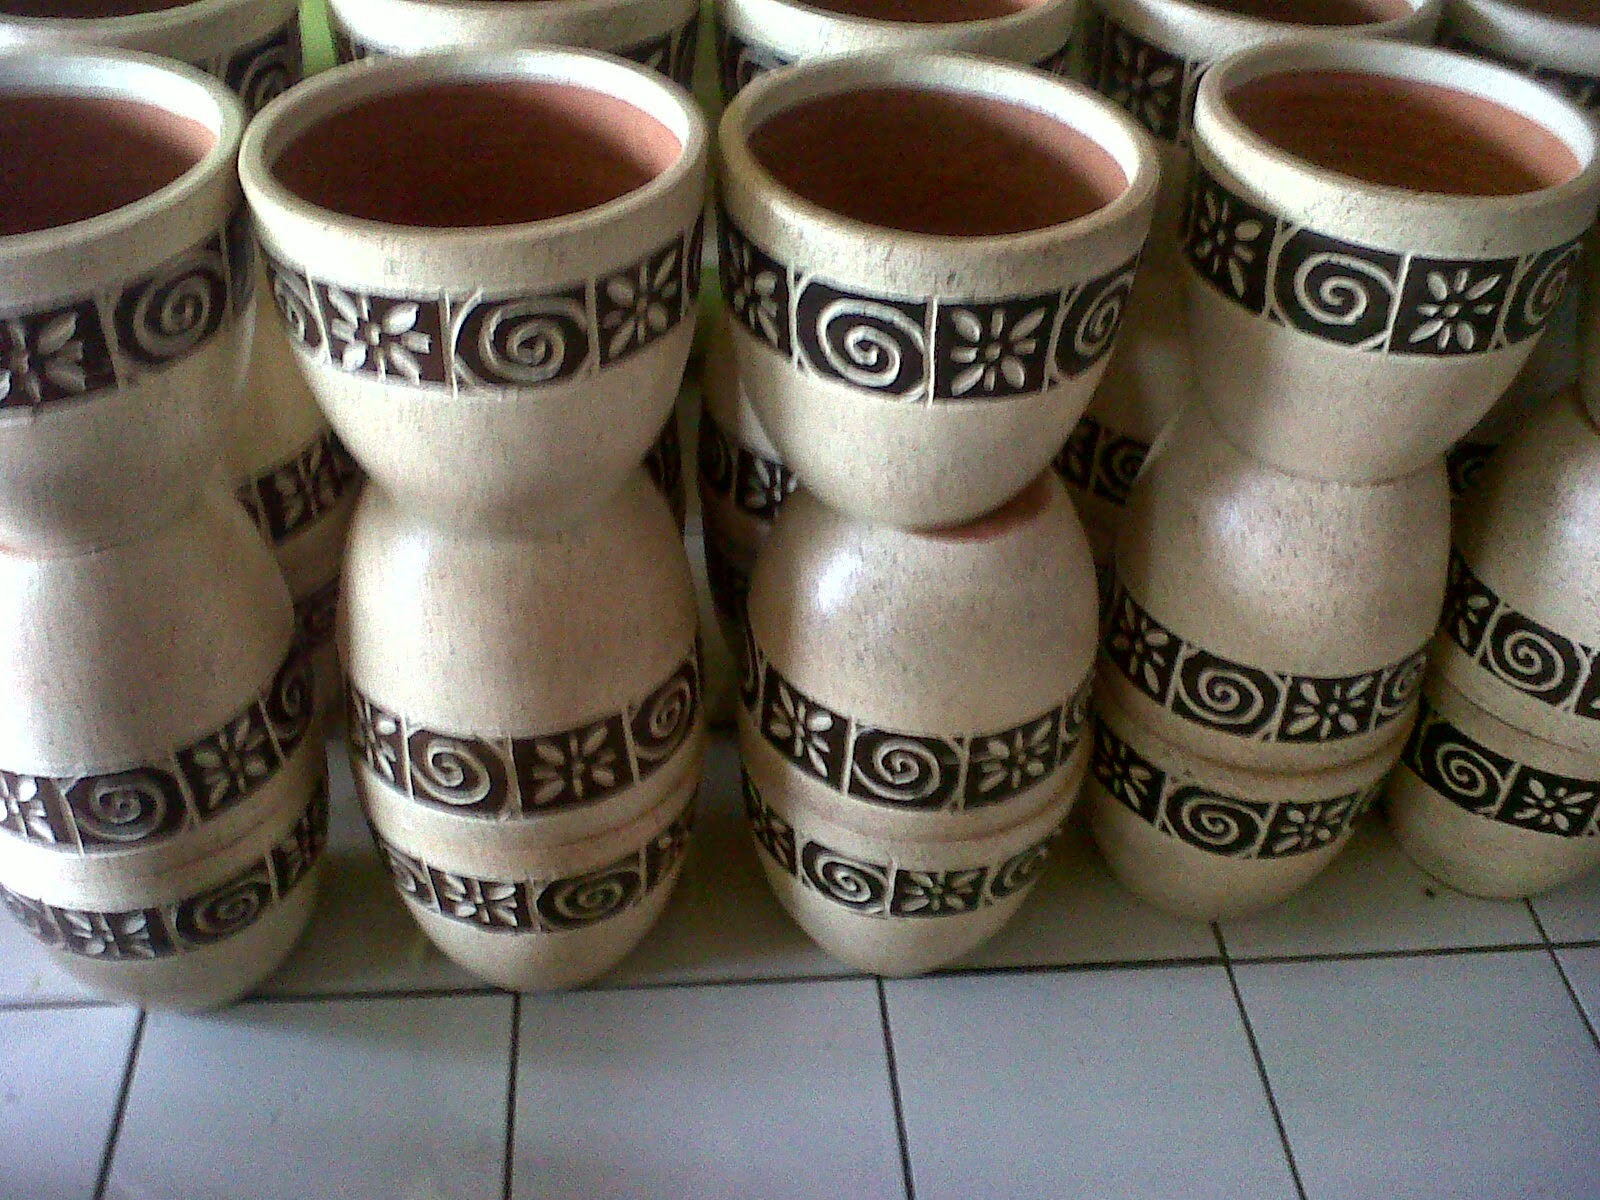 Terjual Jual Produksi Keramik Gerabah Keramik Mulya 